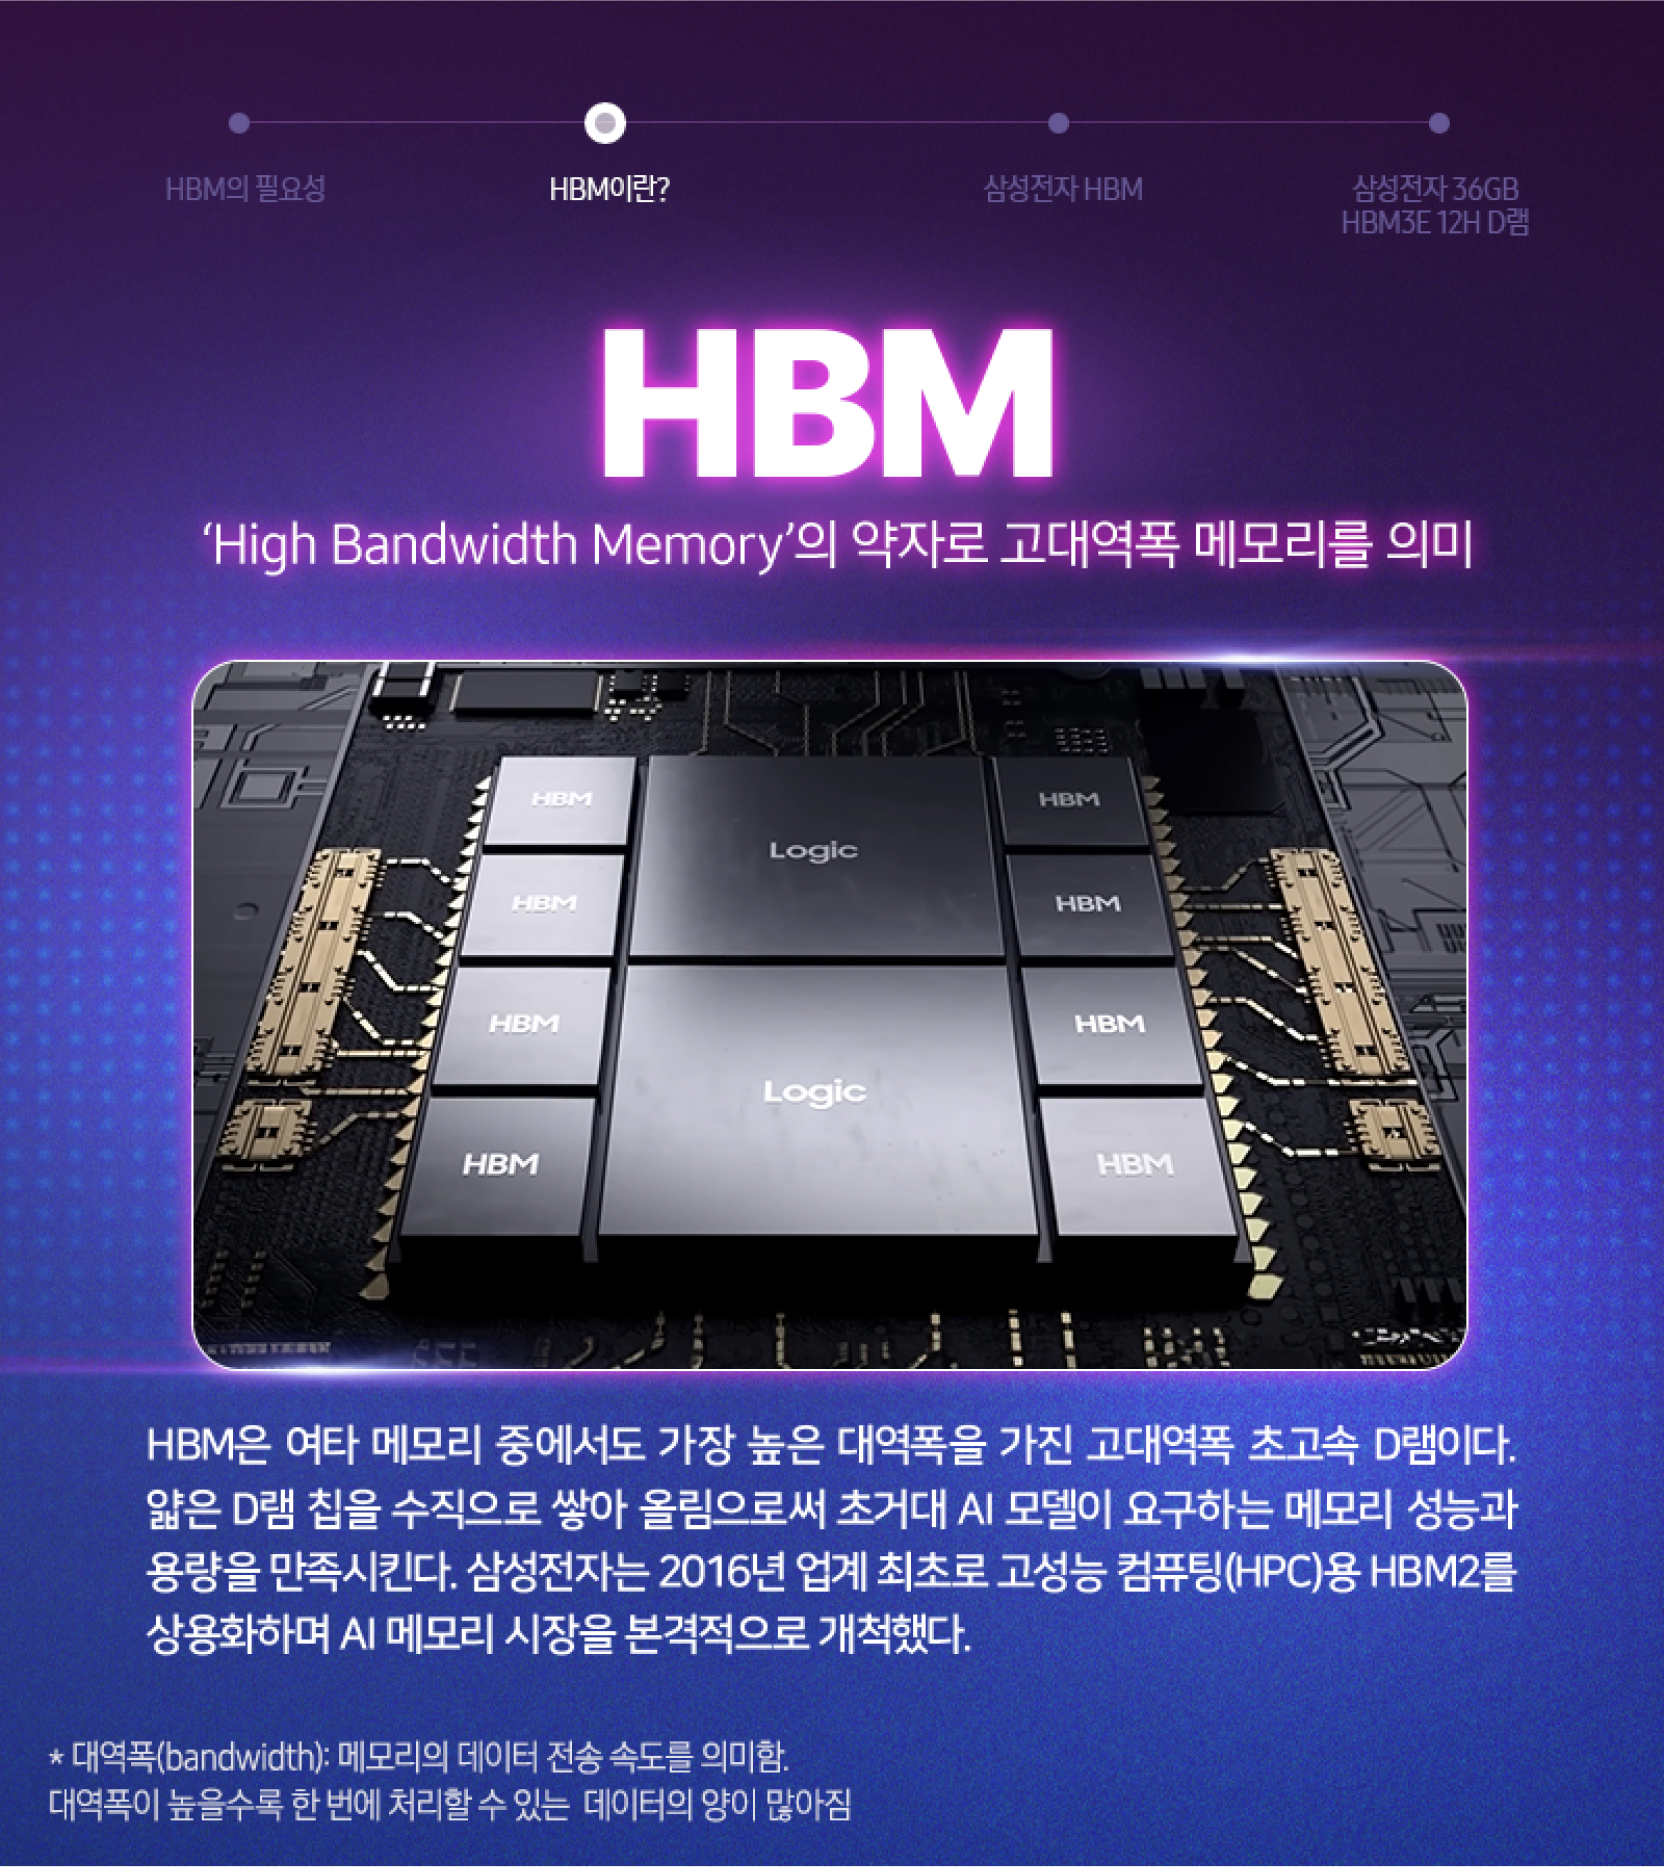 고속 데이터 처리를 위한 혁신적인 메모리 기술인 HBM 칩들의 배열